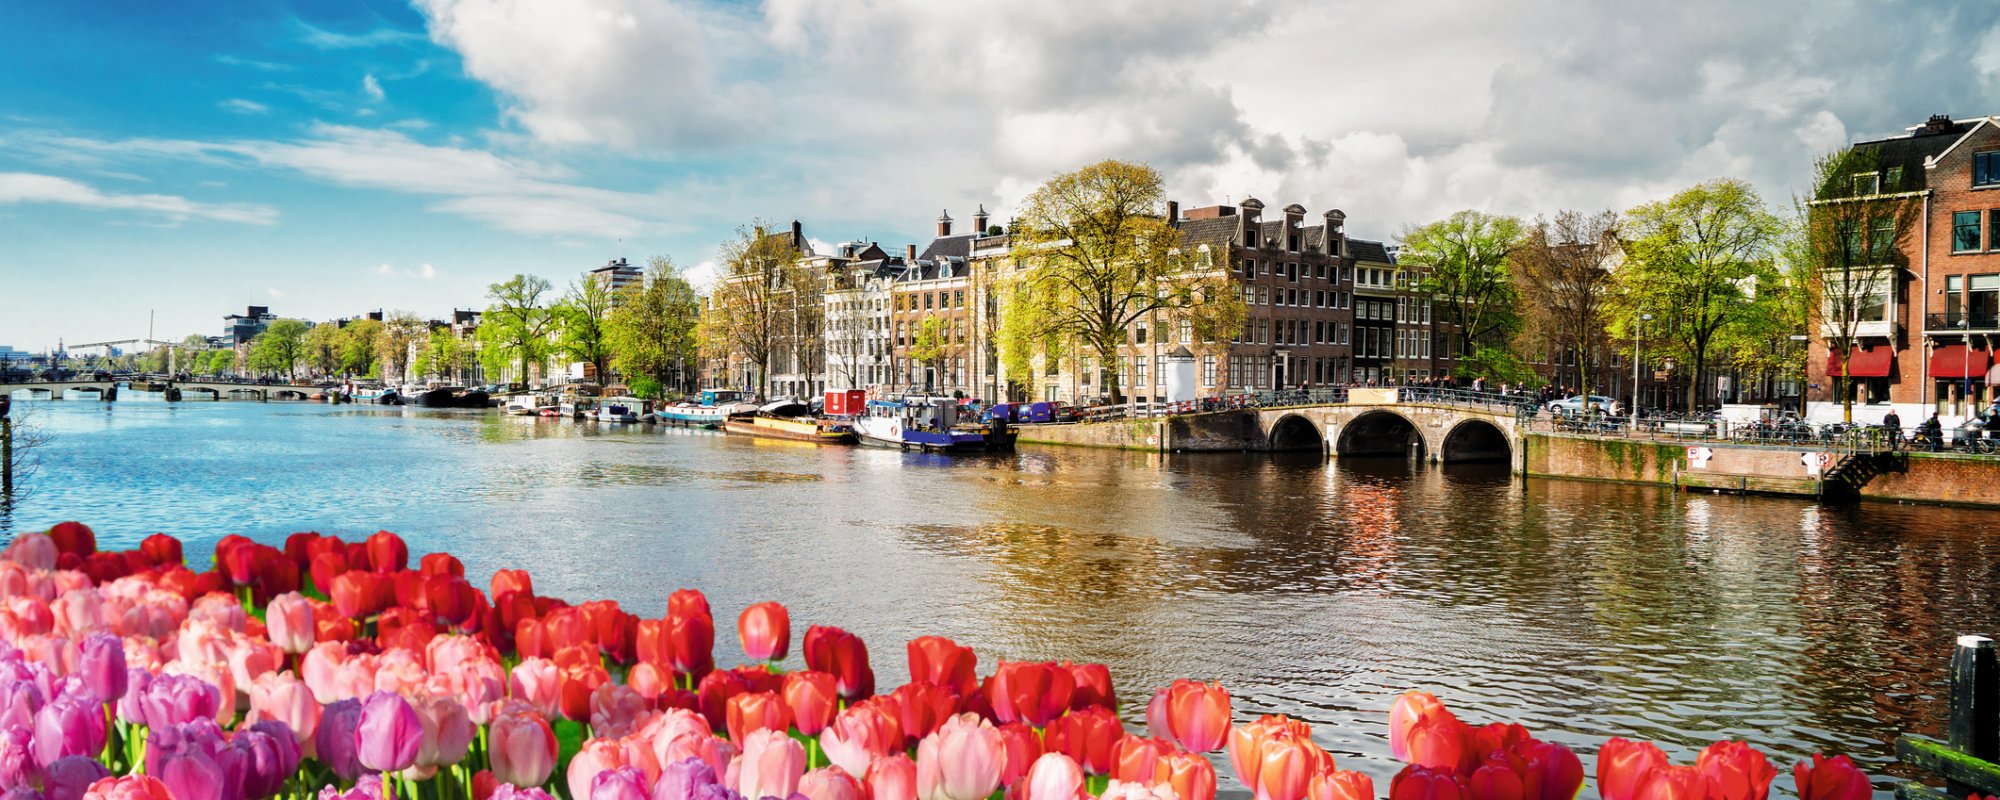 Amsterdam Amstel Kanal mit Tulpen